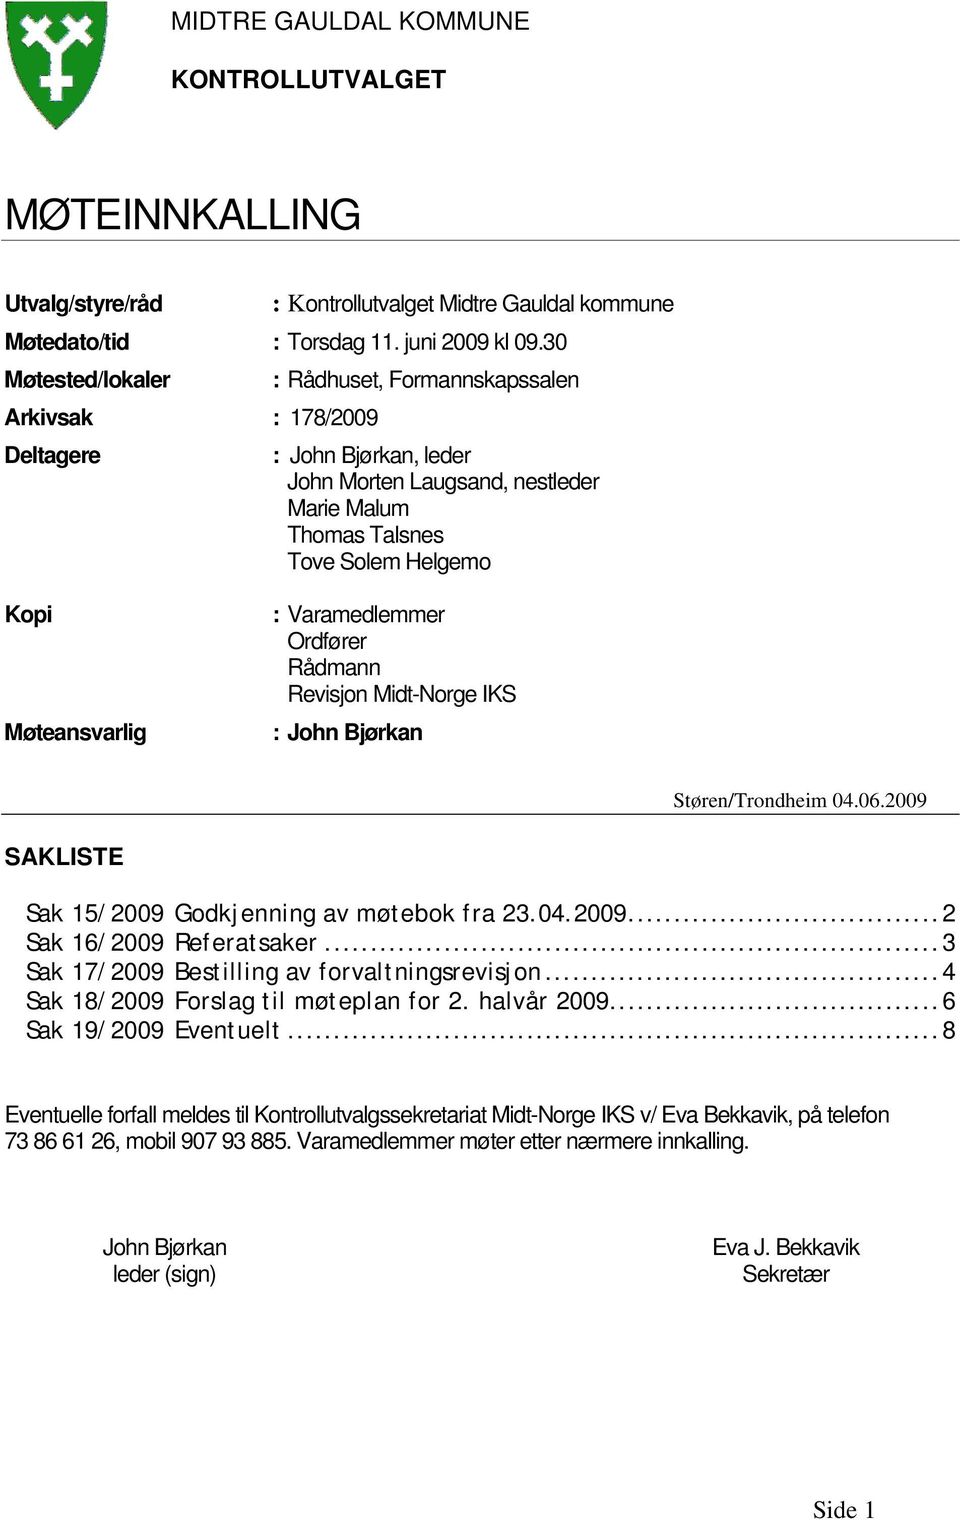 : Varamedlemmer Ordfører Rådmann Revisjon Midt-Norge IKS : John Bjørkan Støren/Trondheim 04.06.2009 SAKLISTE Sak 15/2009 Godkjenning av møtebok fra 23.04.2009...2 Sak 16/2009 Referatsaker.